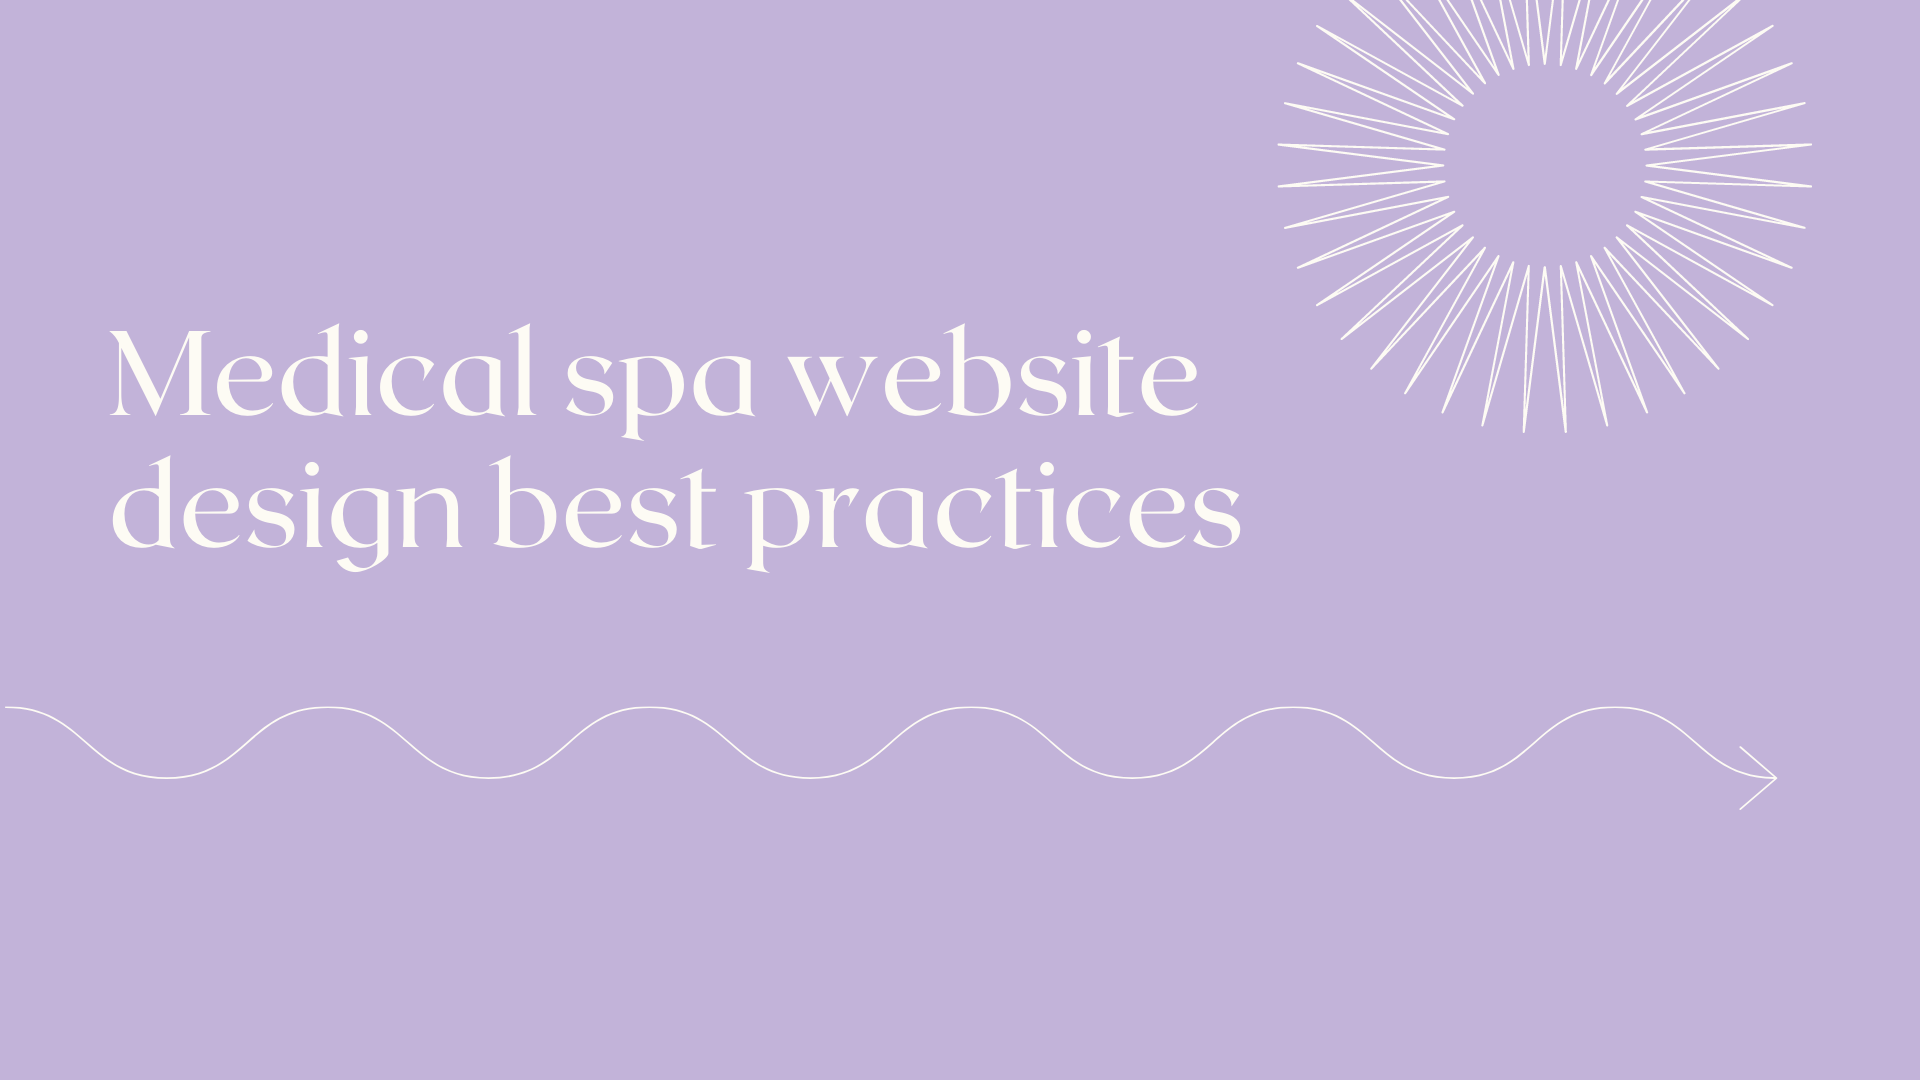 Medical spa website design best practices